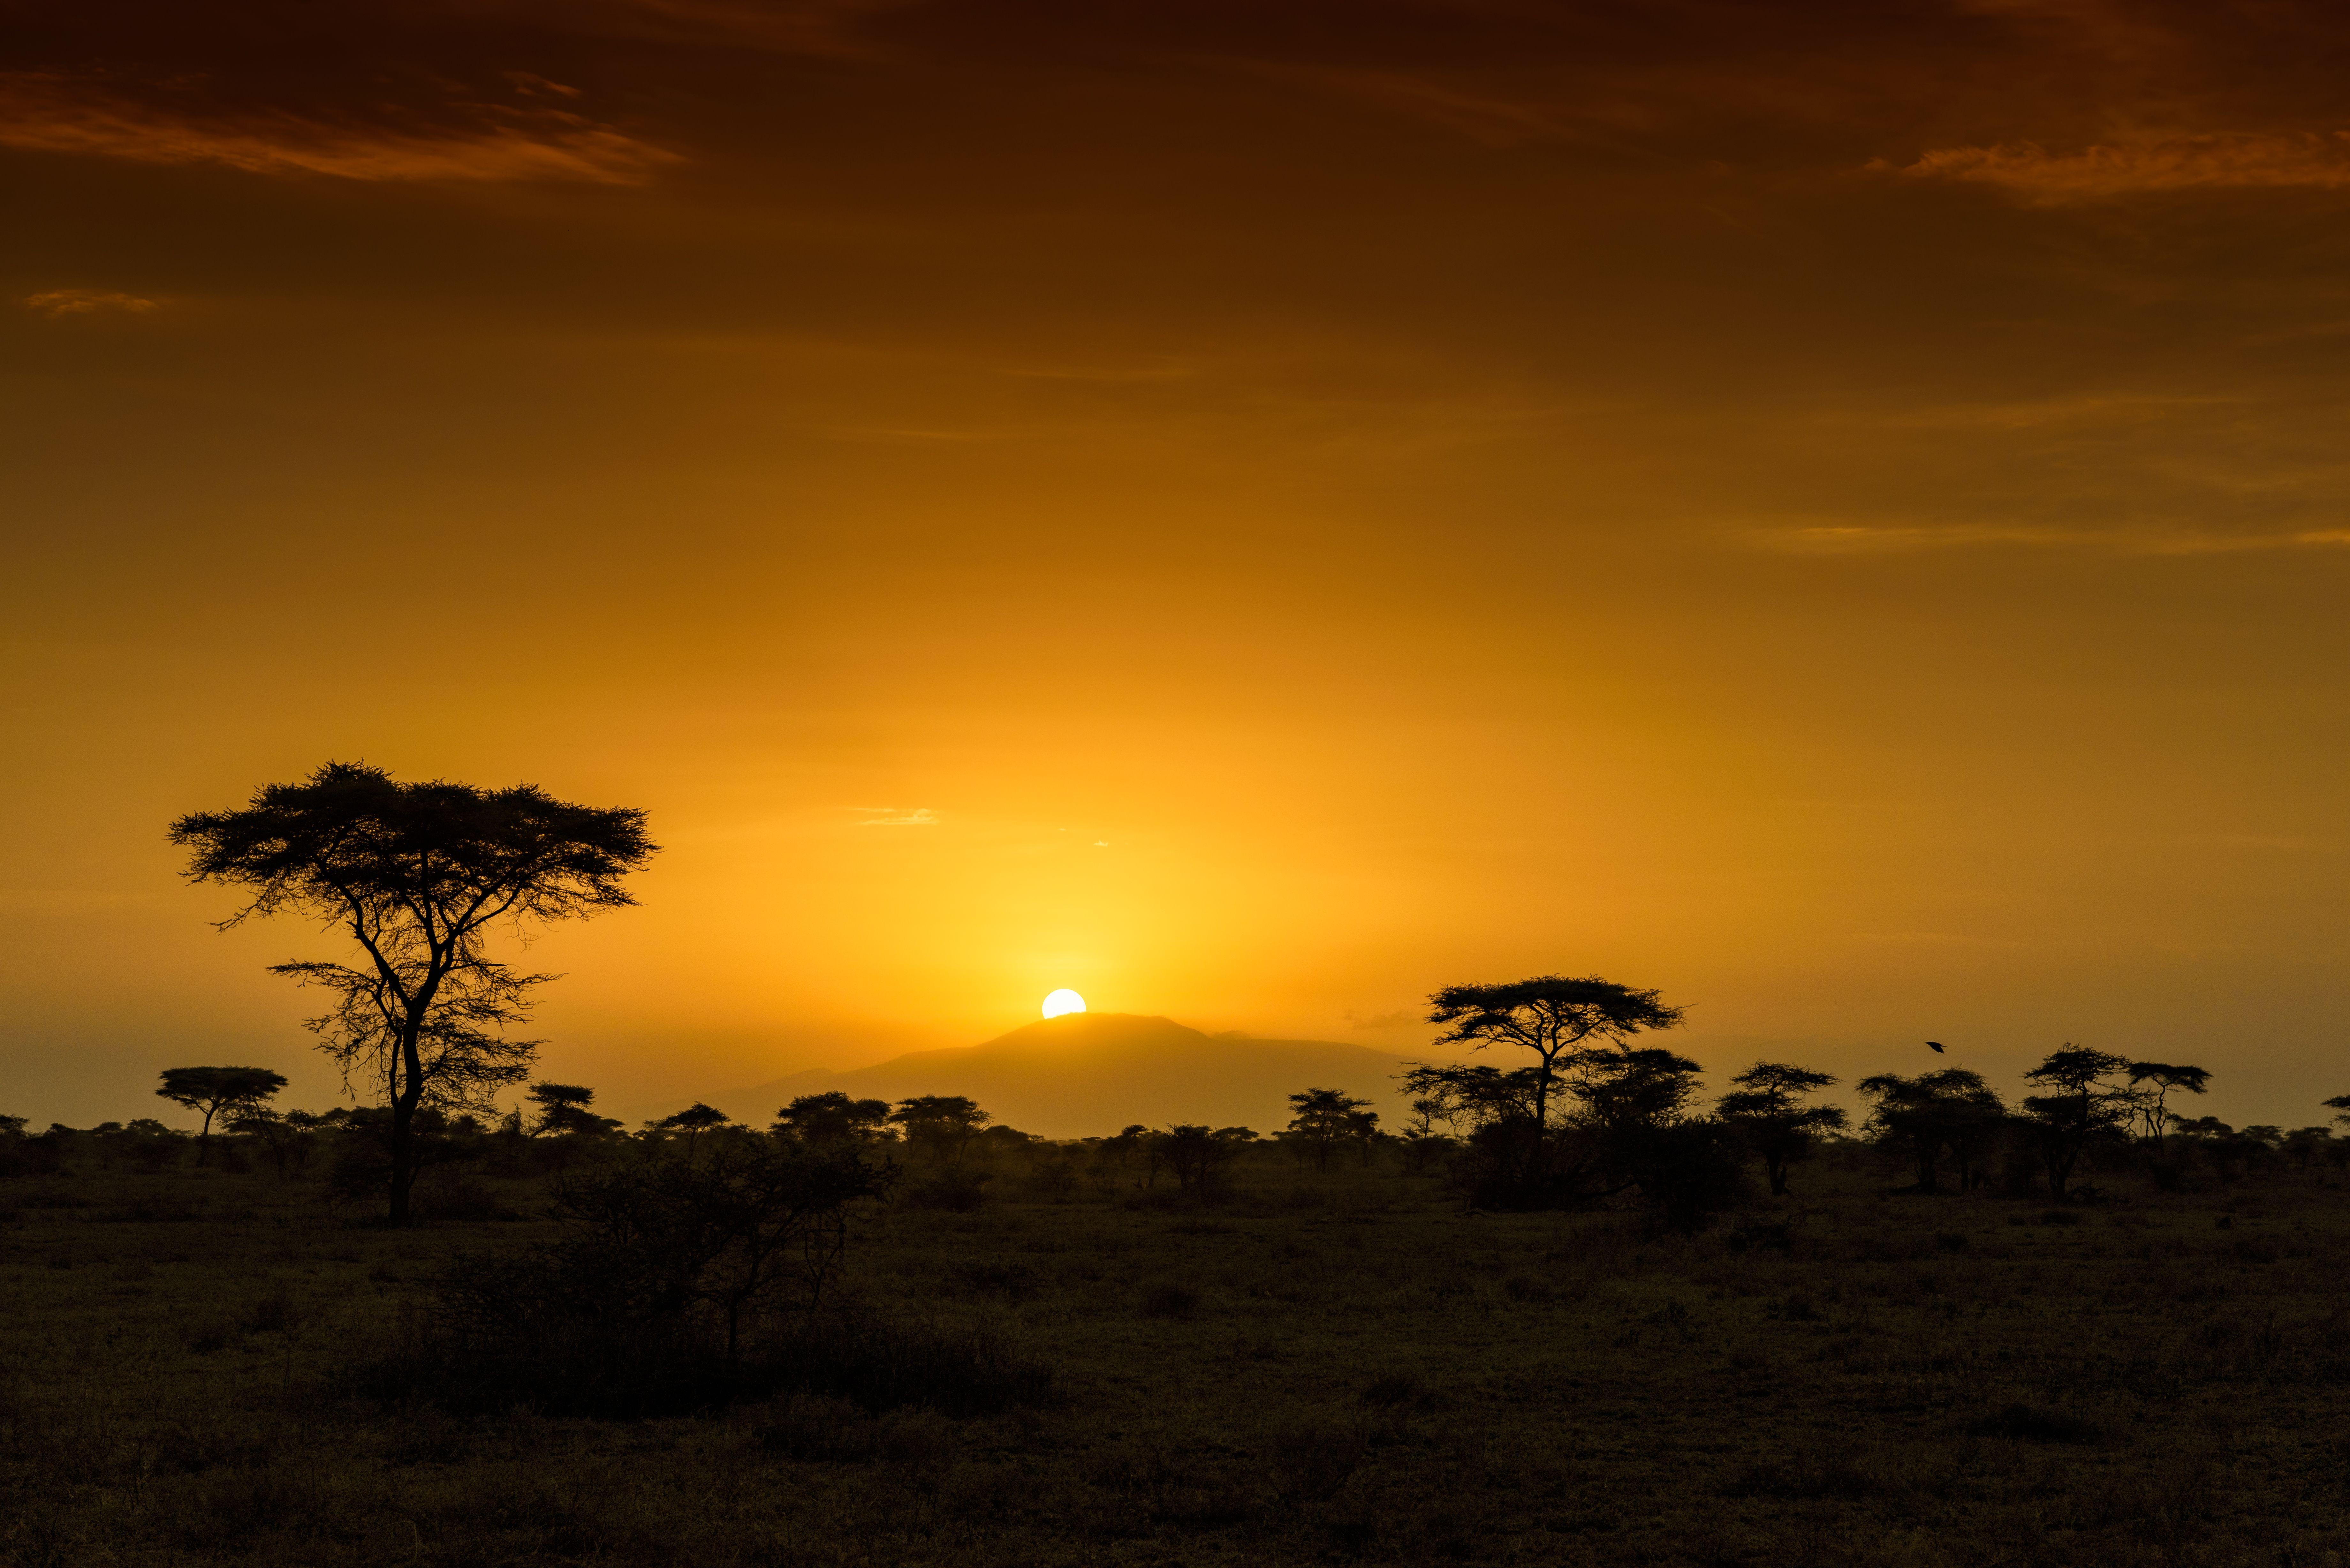 Sunrise in Africa 5k Retina Ultra HD Wallpaper